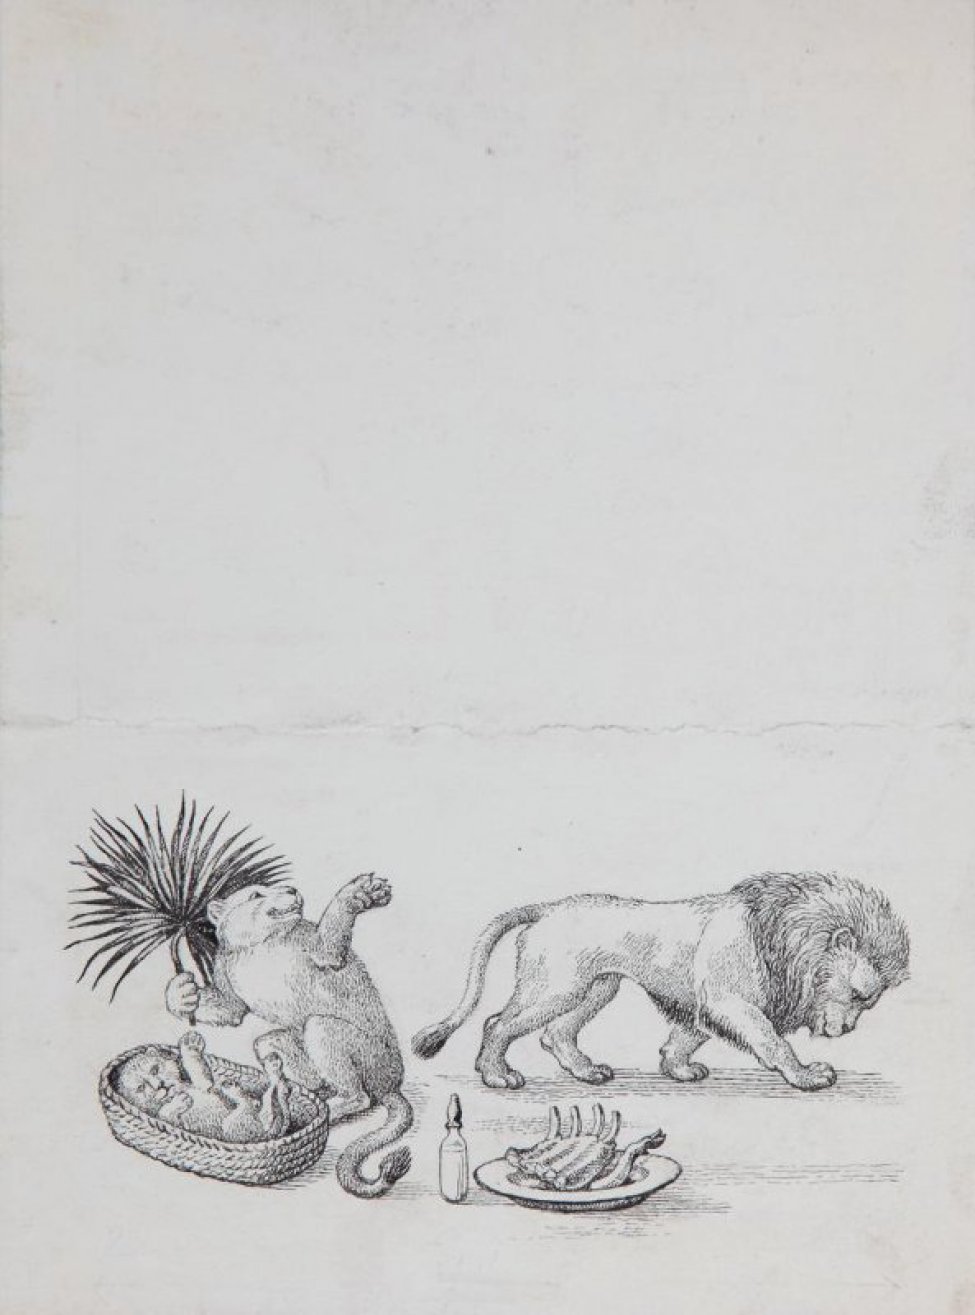 Изображены: слева - львица с пальмовой ветвью в лапах, перед ней львенок в плетеной корзинке; справа - лев. На первом плане - бутылочка с соской, тарелка с остатками пищи.